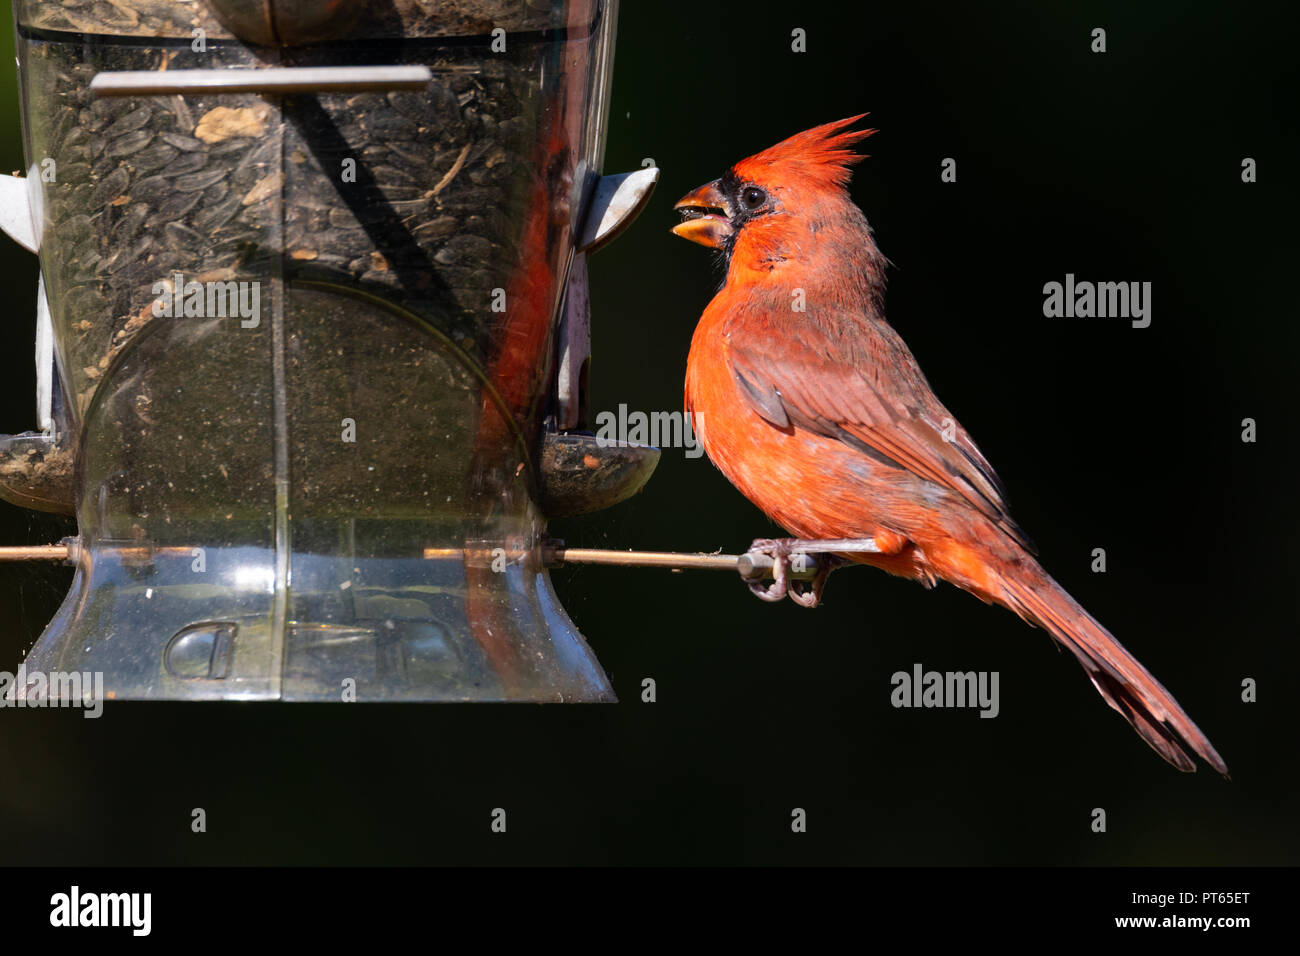 Male northern cardinal (Cardinalis cardinalis) eating breakfast at a backyard bird feeder. Stock Photo